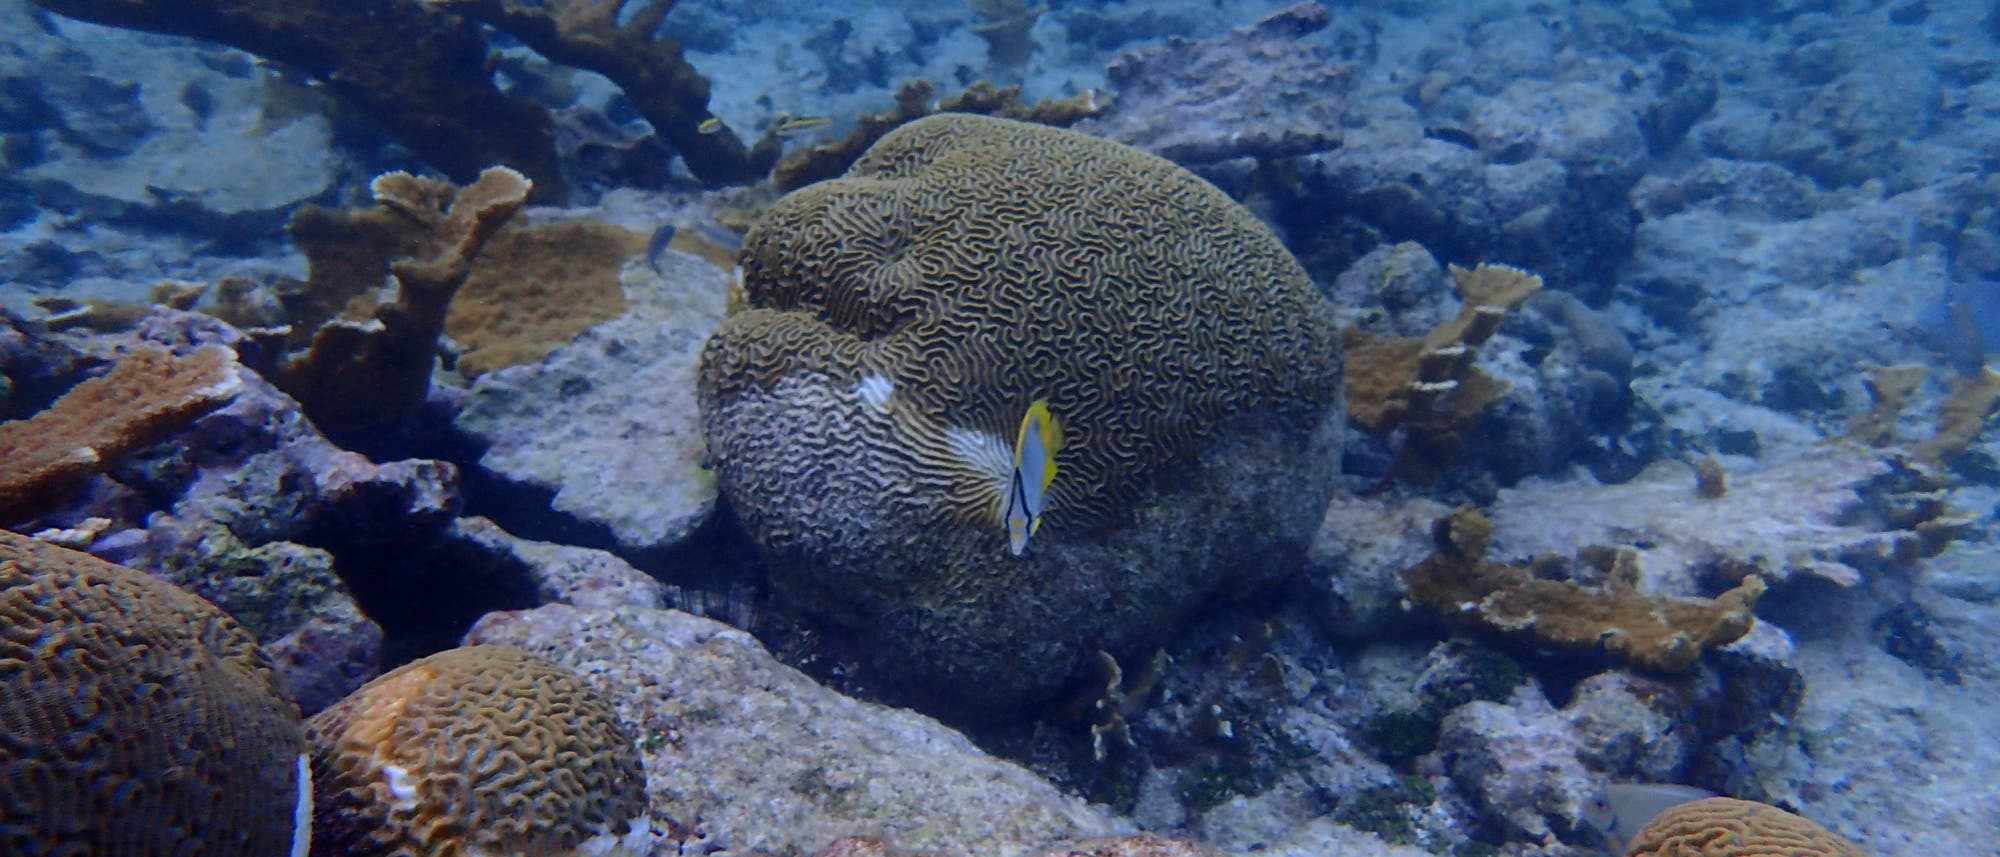 Ein Korallenriff in Belize mit toten, bleichen Korallen, lebenden gesunden und farbigen Geweihkorallen sowie kranken, bleichen als auch gesunden bunten Hirnkorallen. Vor der zentralen Koralle schwimmt ein bunter Falterfisch.